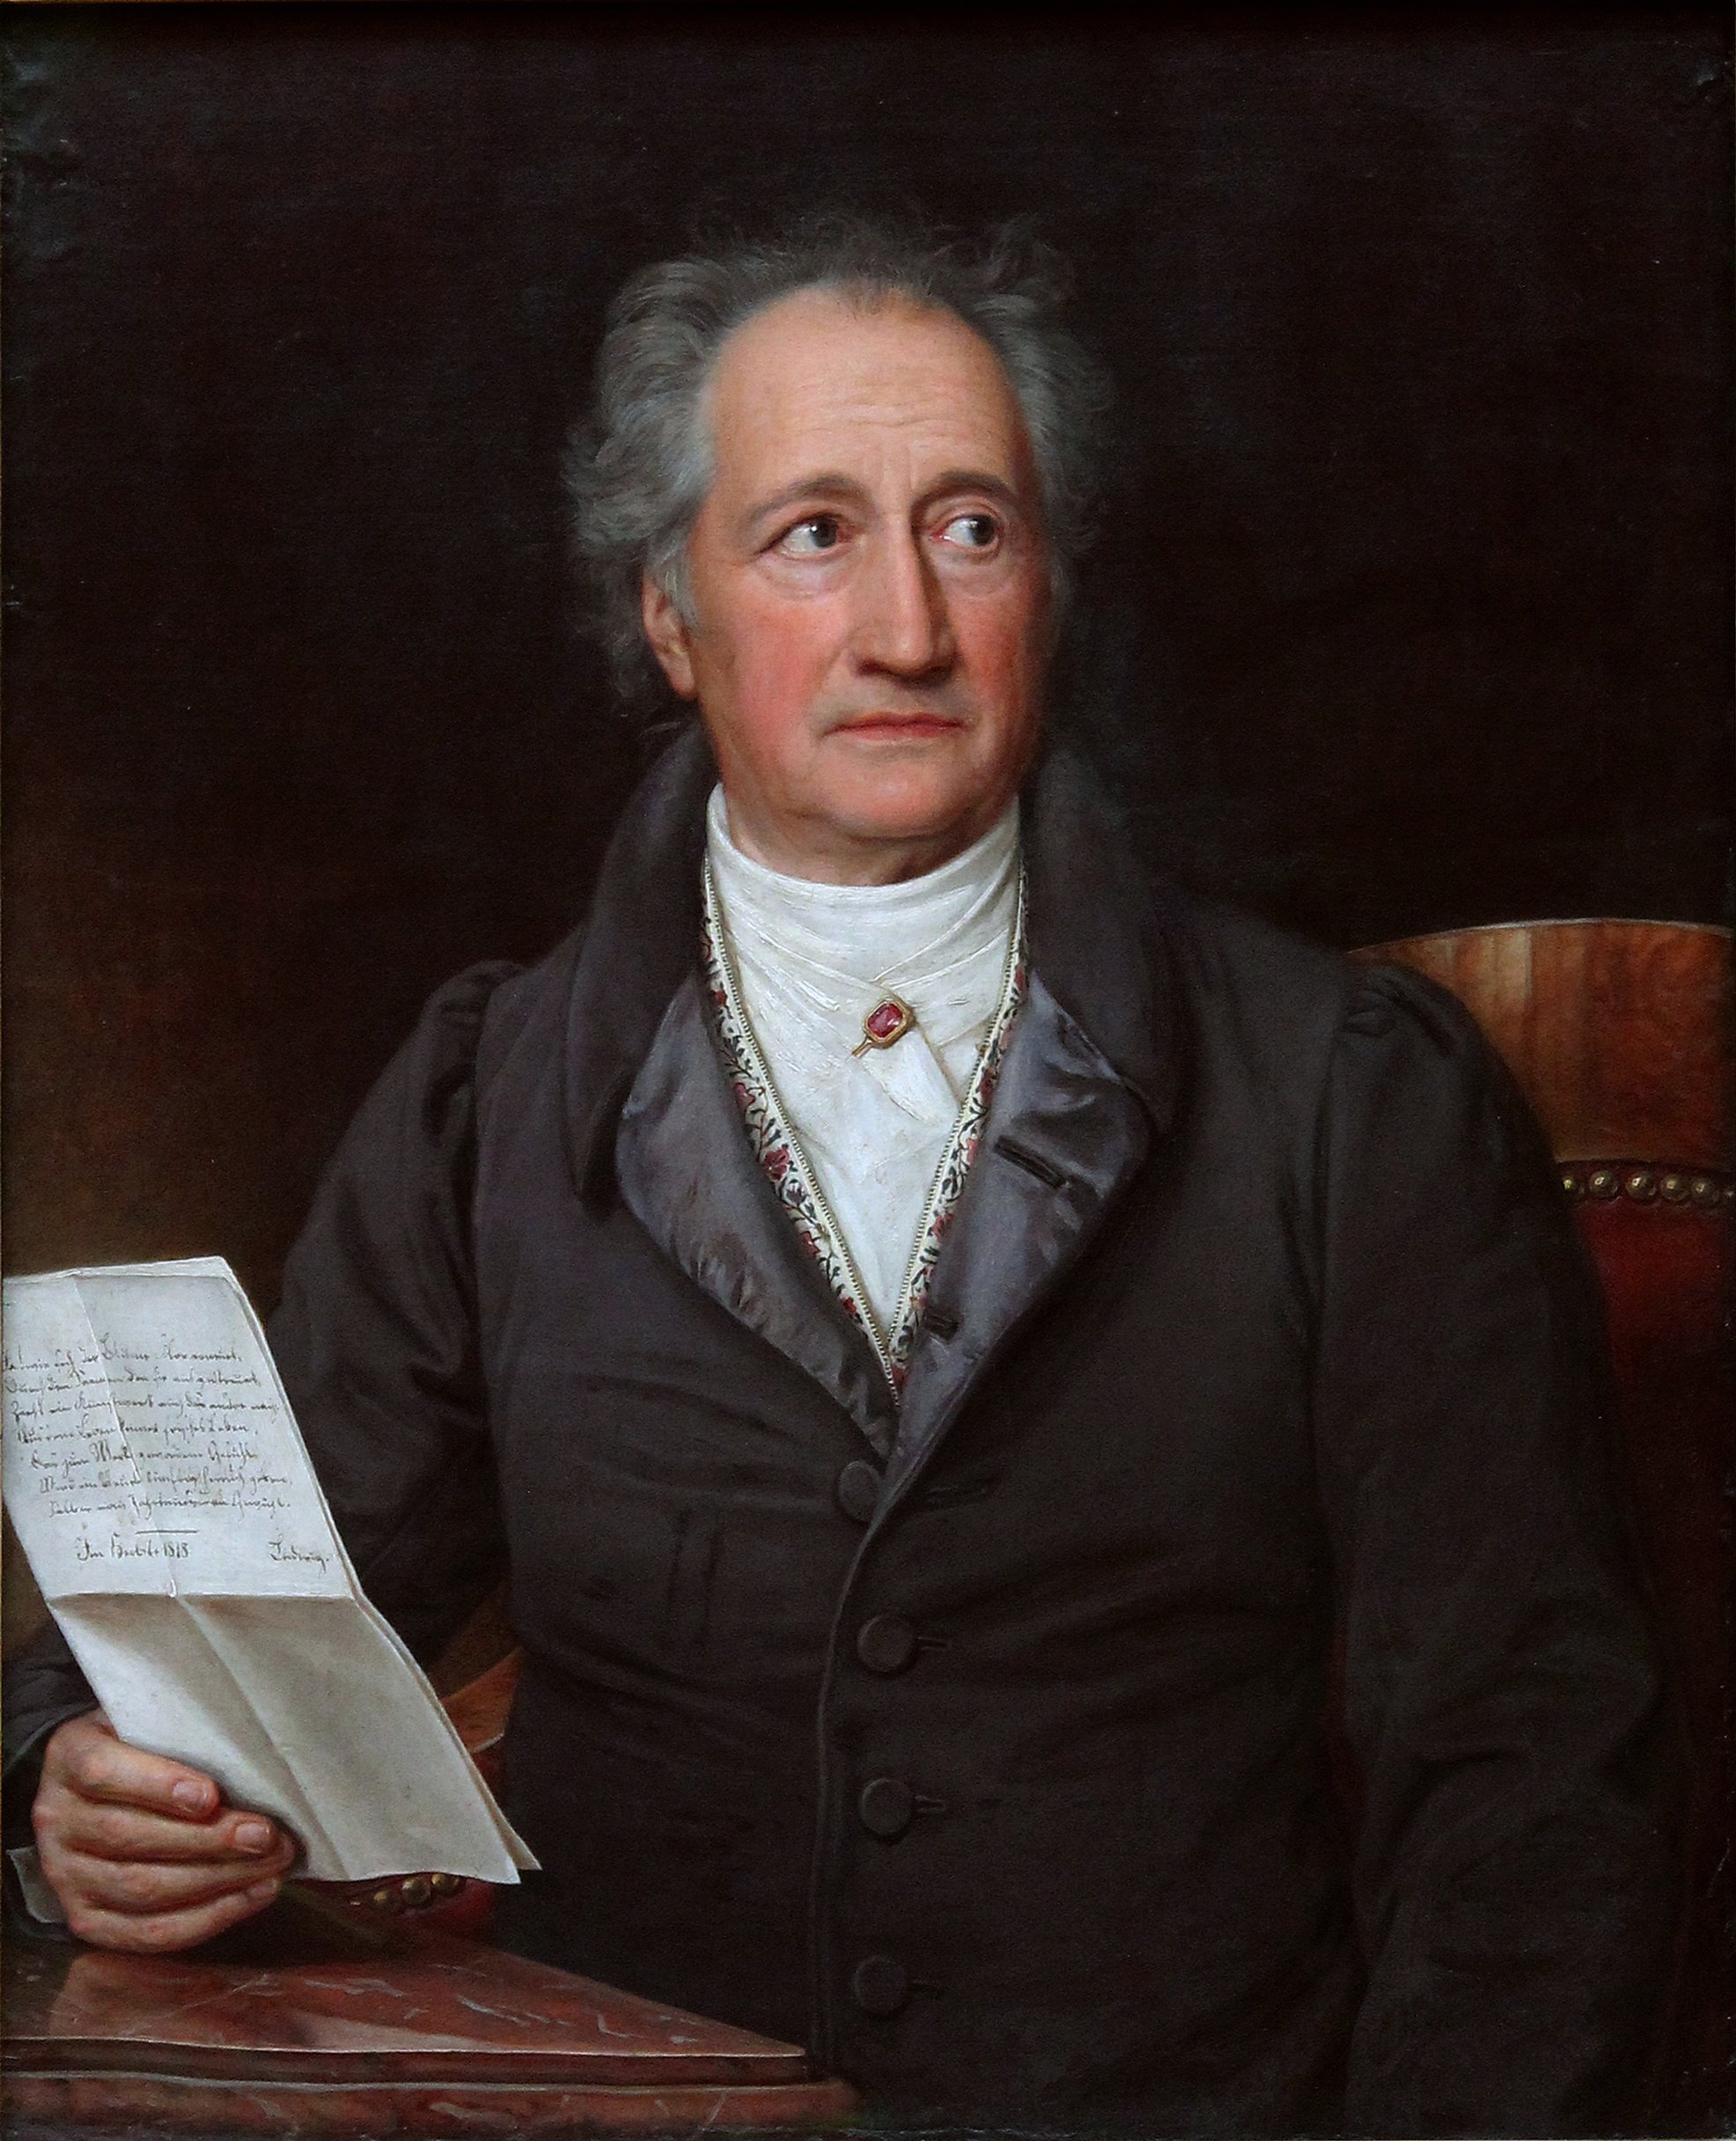 auteur Johann Wolfgang von Goethe de la citation Celui qui rencontre de bonne heure des obstacles parvient à une liberté tranquille ; celui qui ne rencontre des obstacles que plus tard, ne connaît qu'une liberté amère.